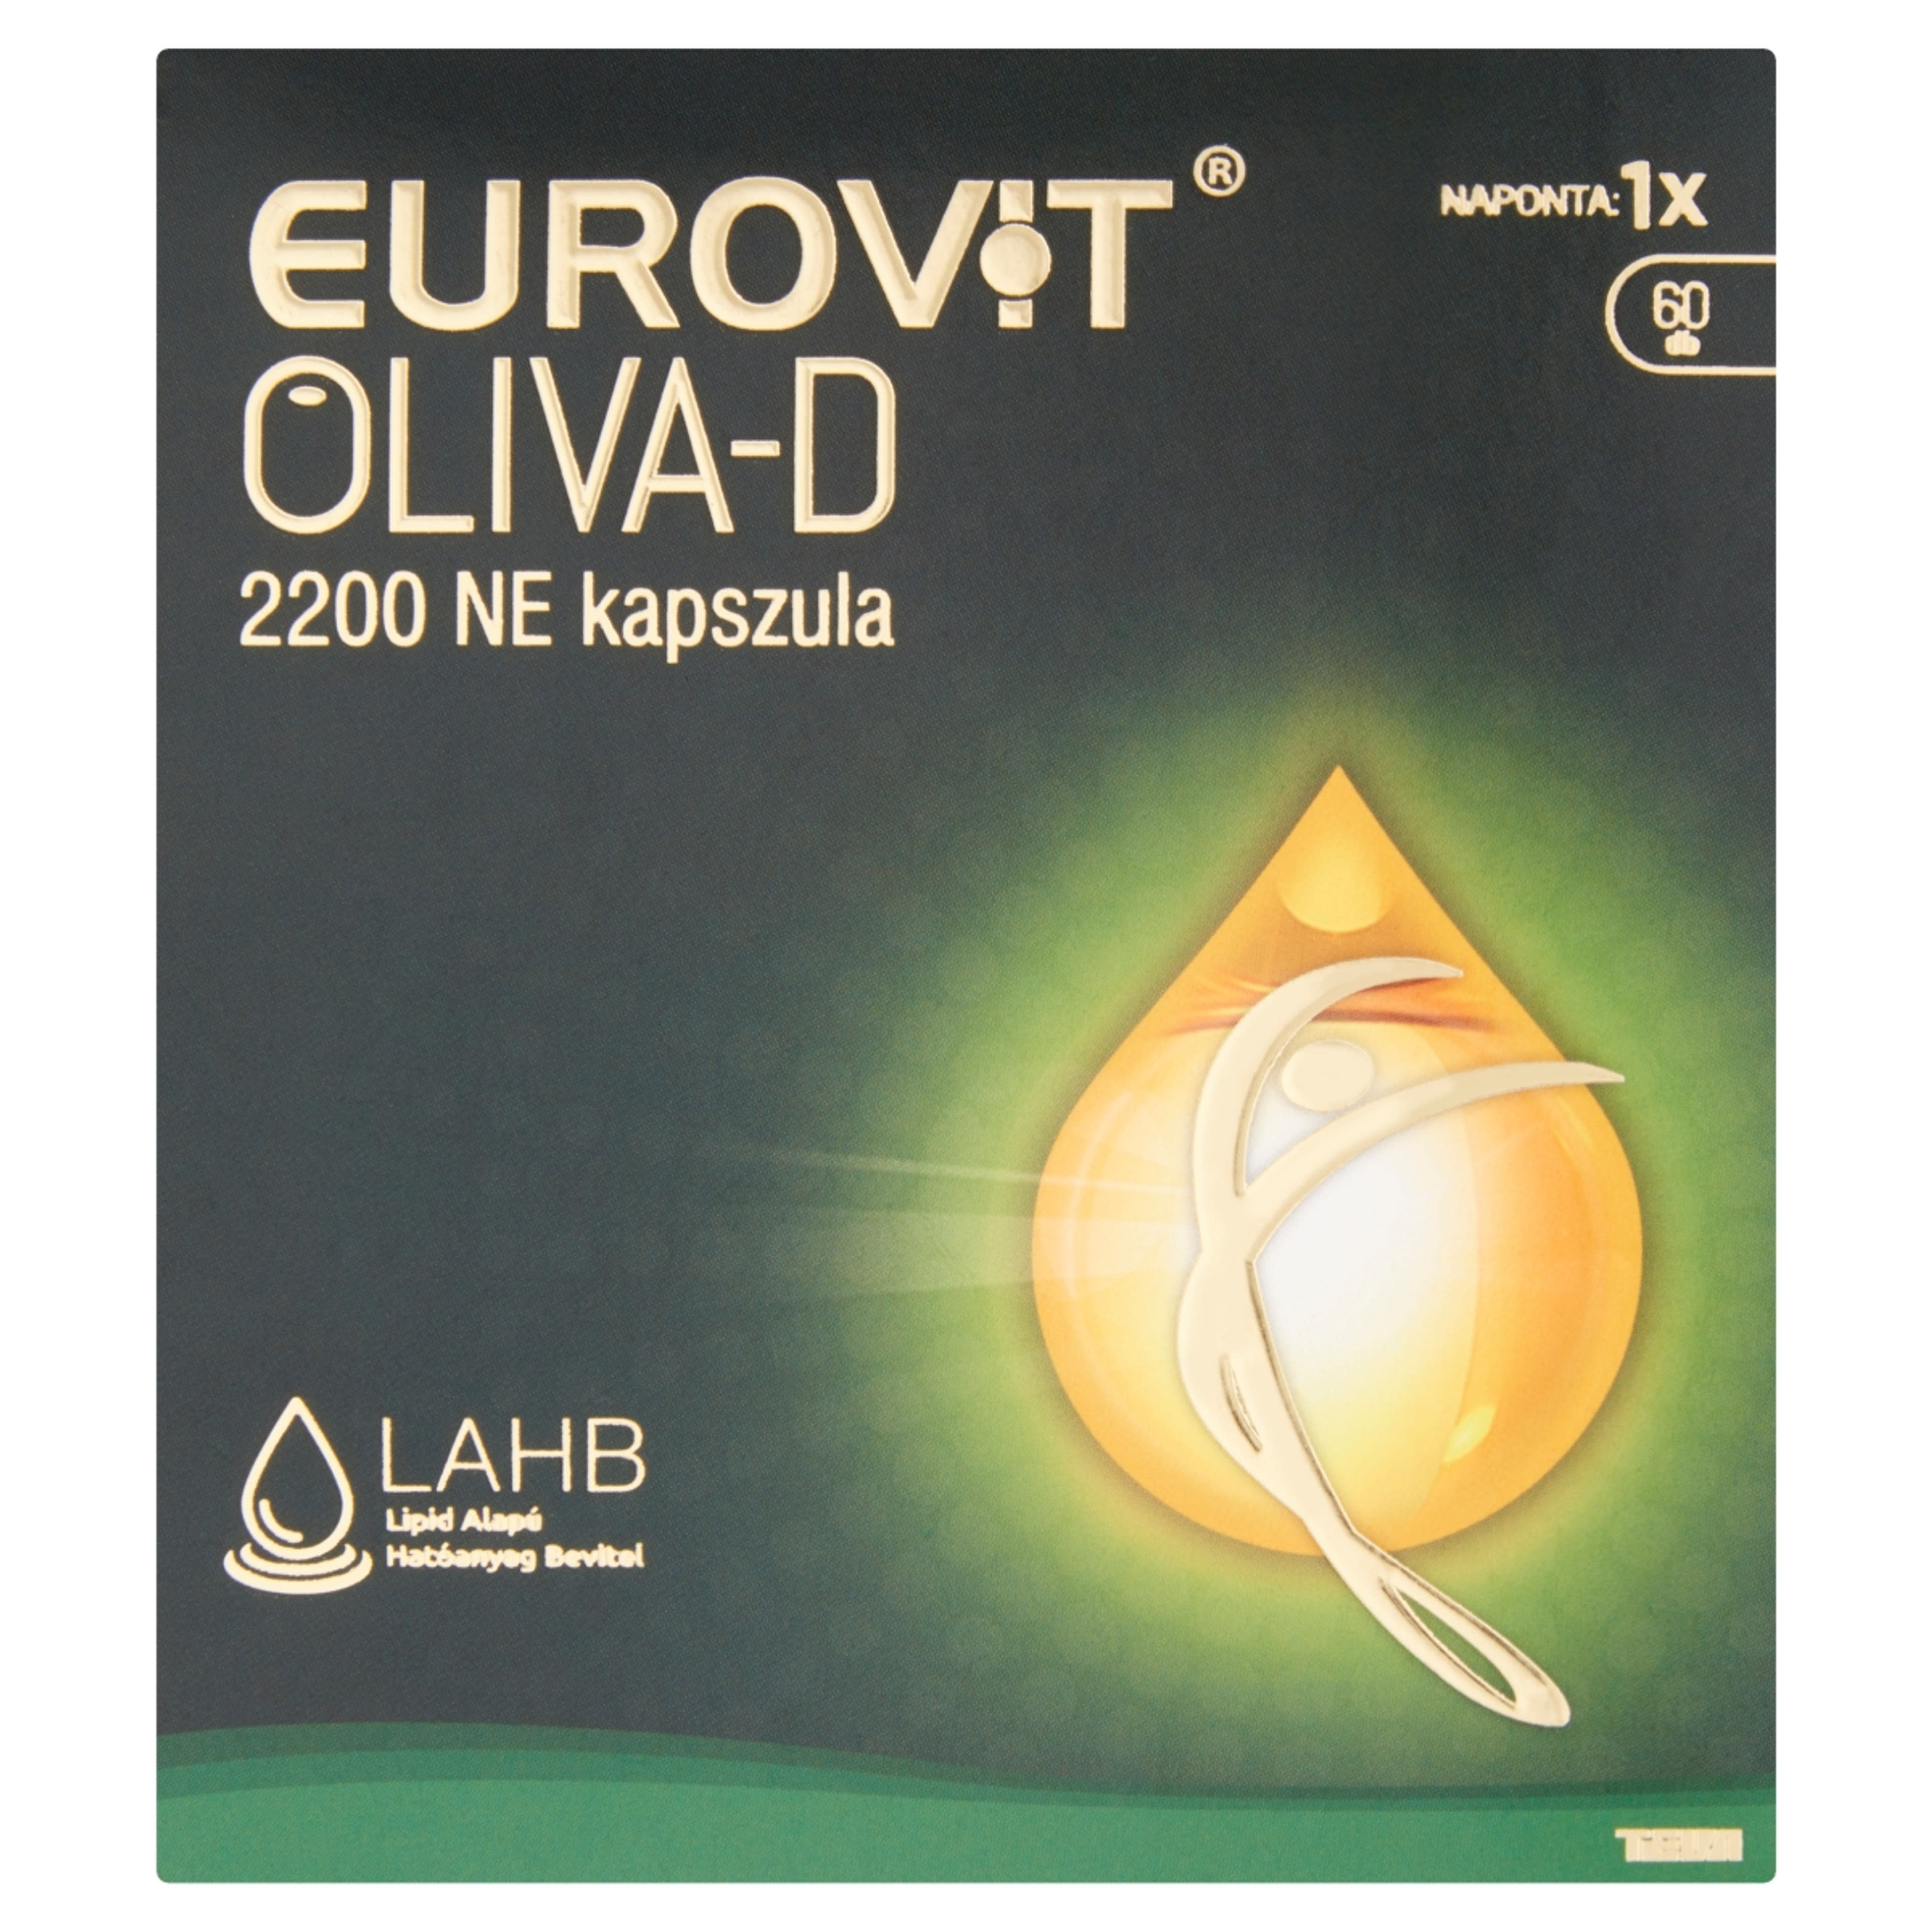 Eurovit oliva-d 2200Ne kapszula - 60 db